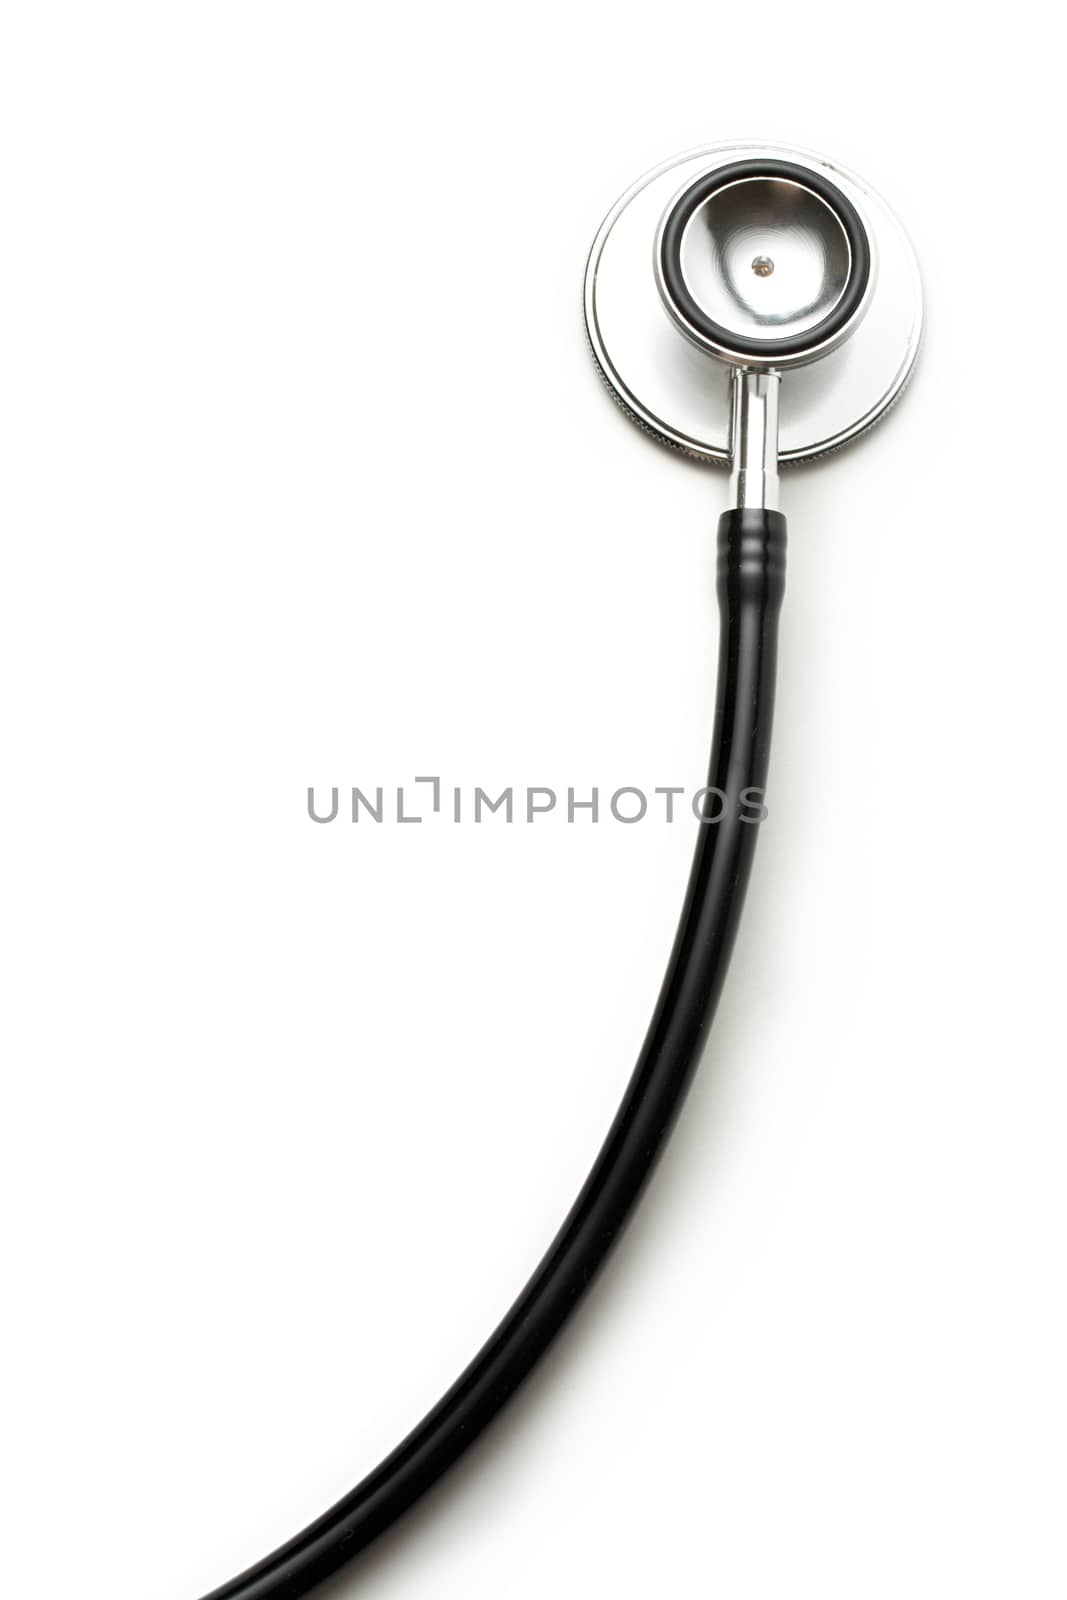 Stethoscope on the white background by Garsya